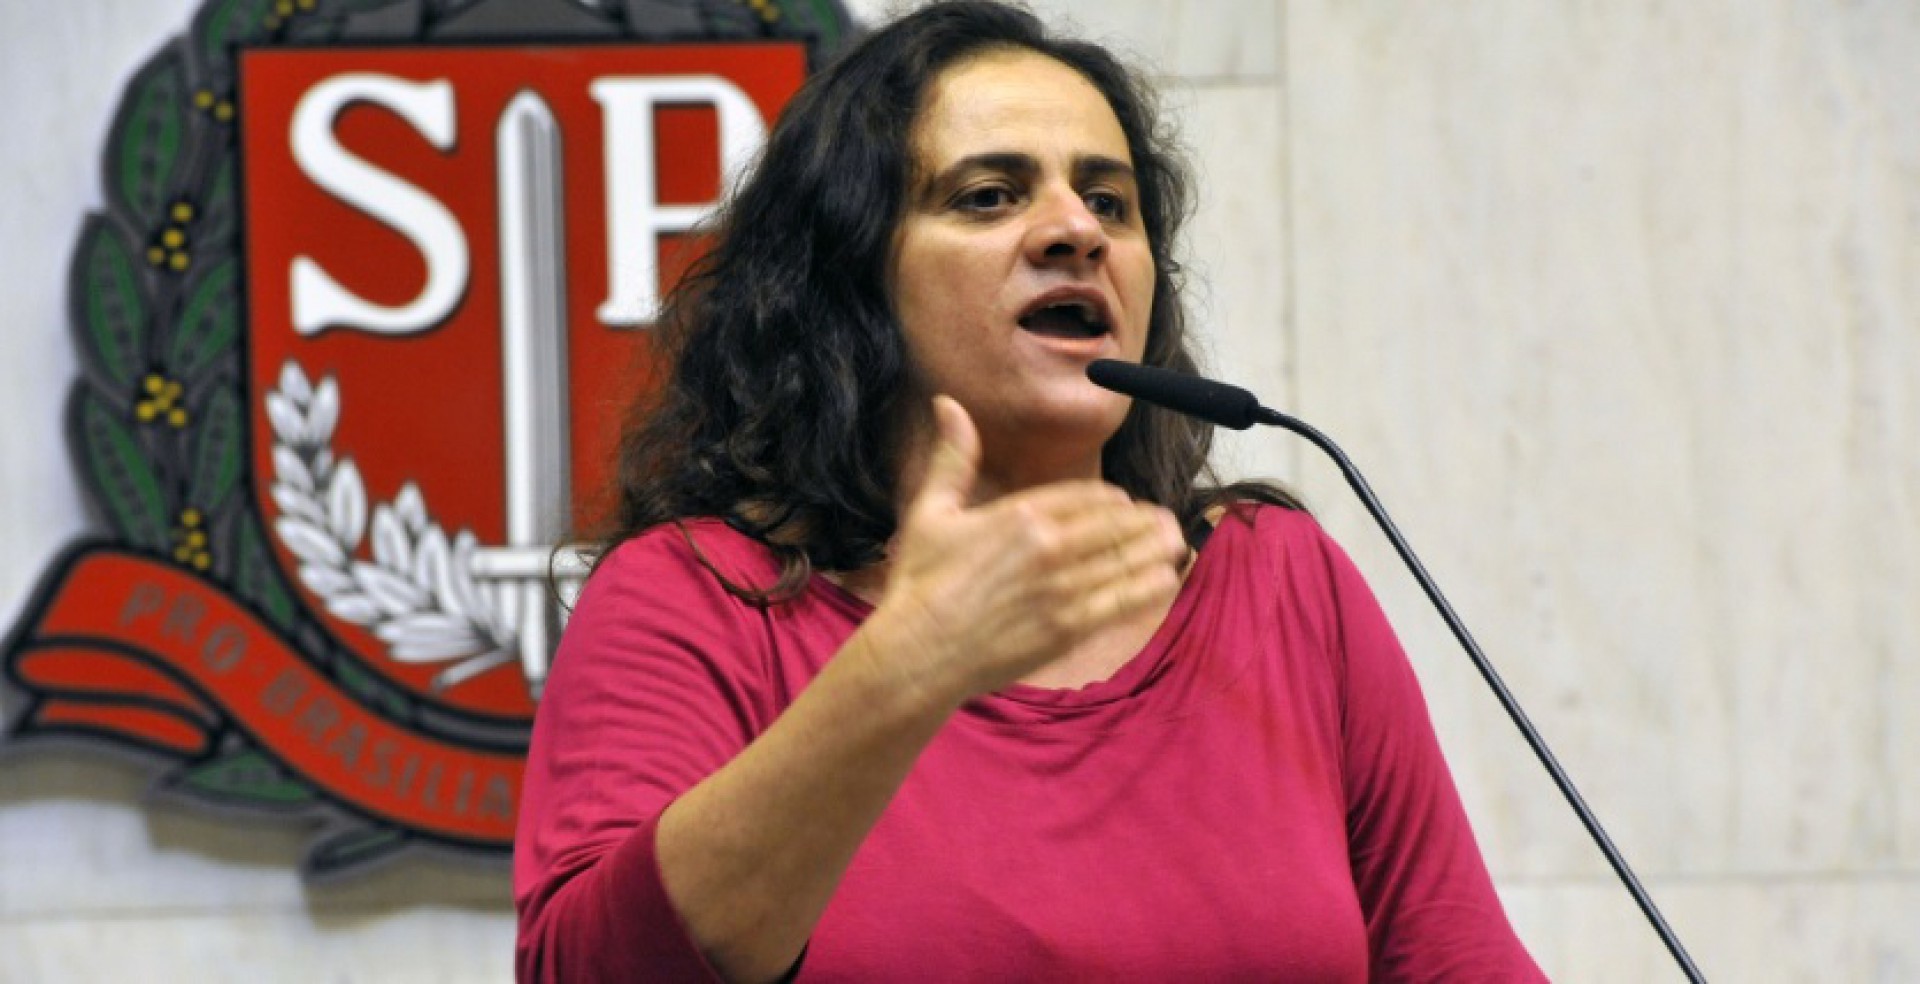 Francisca seixas é professora (Foto: REPRODUÇÃO)